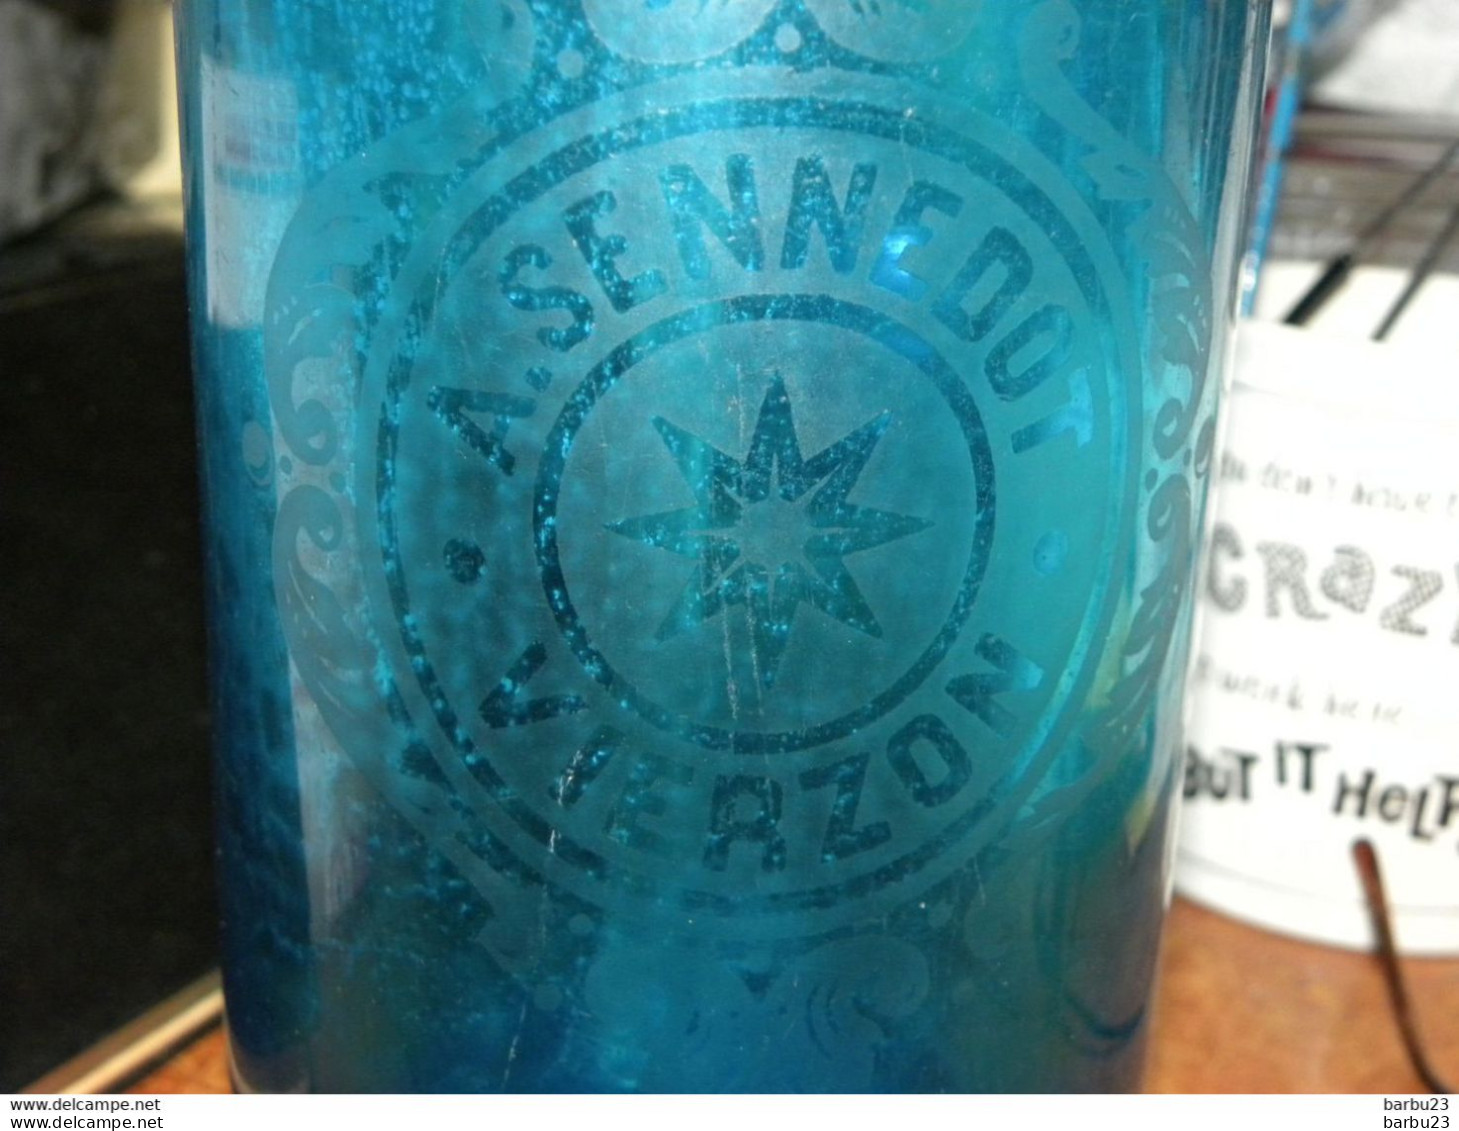 Siphon à eau de seltz A. Sennedot Vierzon - bouchon R. Senechal Vierzon - verre bleu décor étoile -